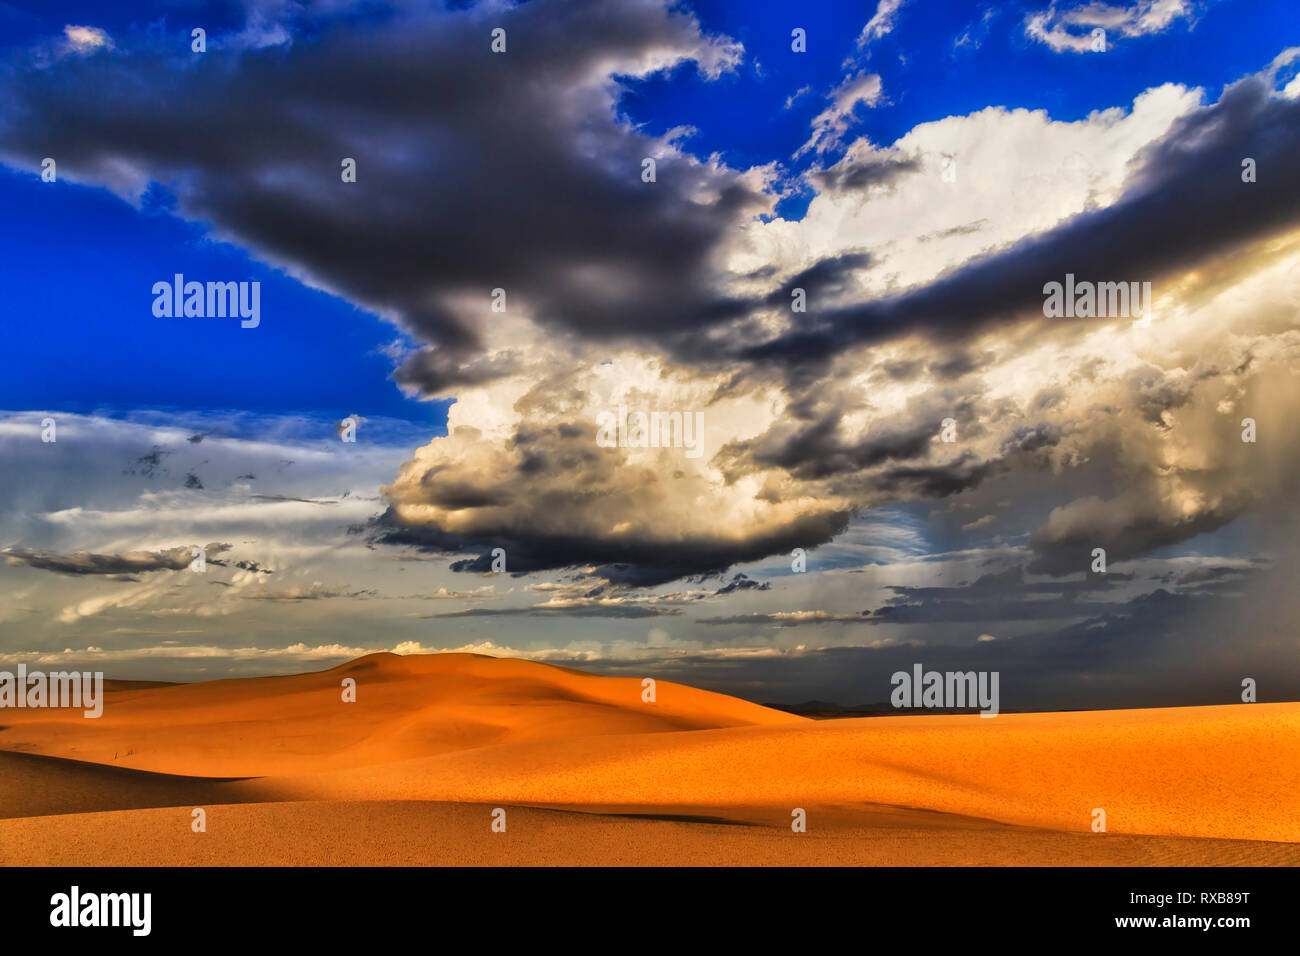 Sec du désert au soleil au coucher du soleil pendant une tempête énorme avec plus de nuage en forme de dunes de sable et de ciel bleu horizon - Stockton Beach région de Hunter, de l'Australie. Banque D'Images